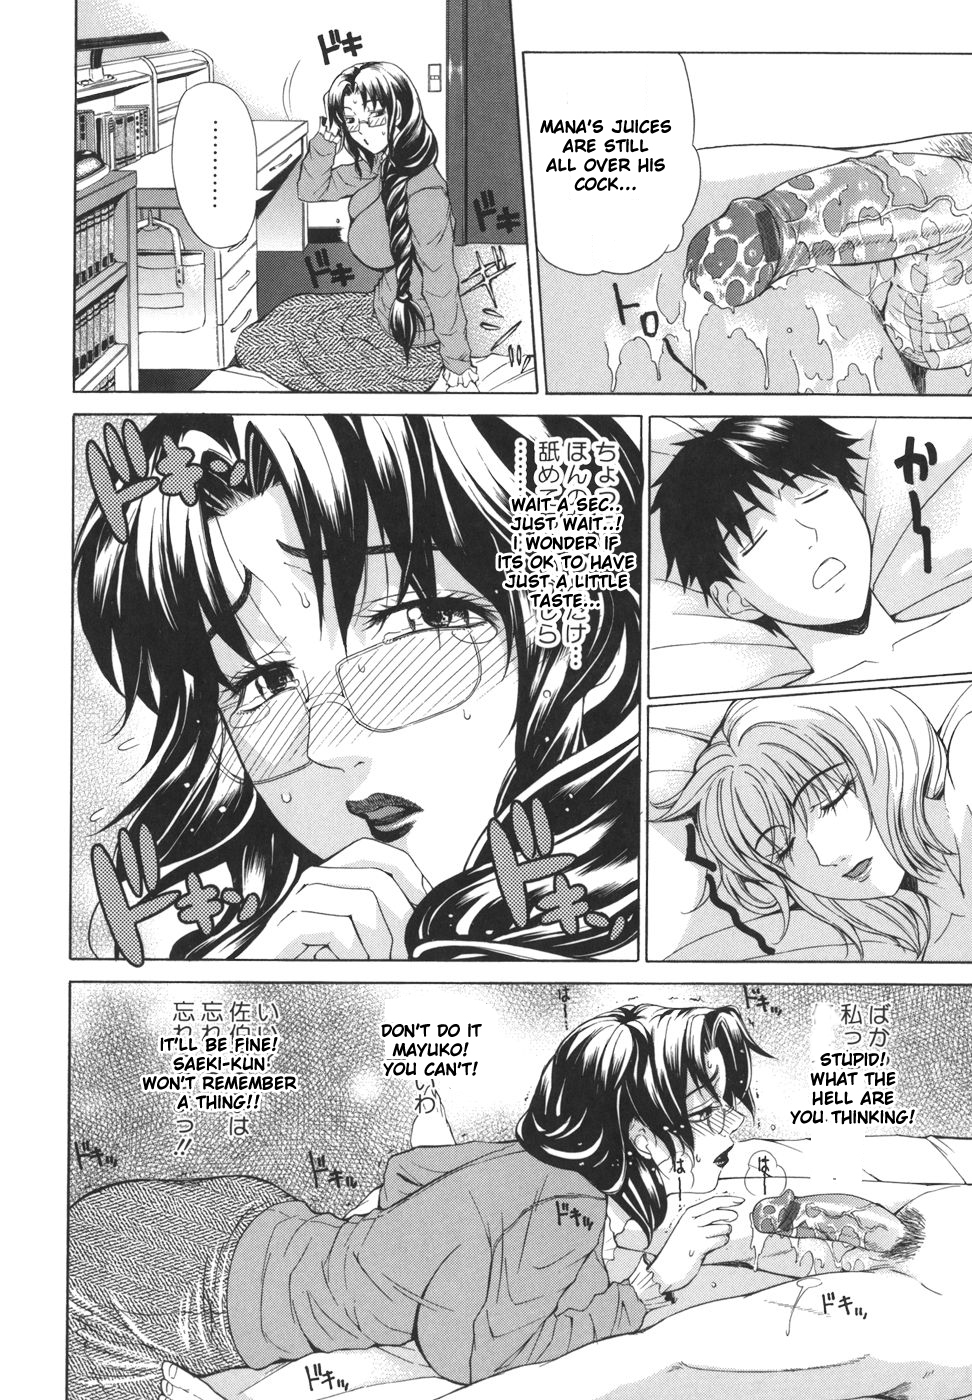 Pearl Rose 35 hentai manga